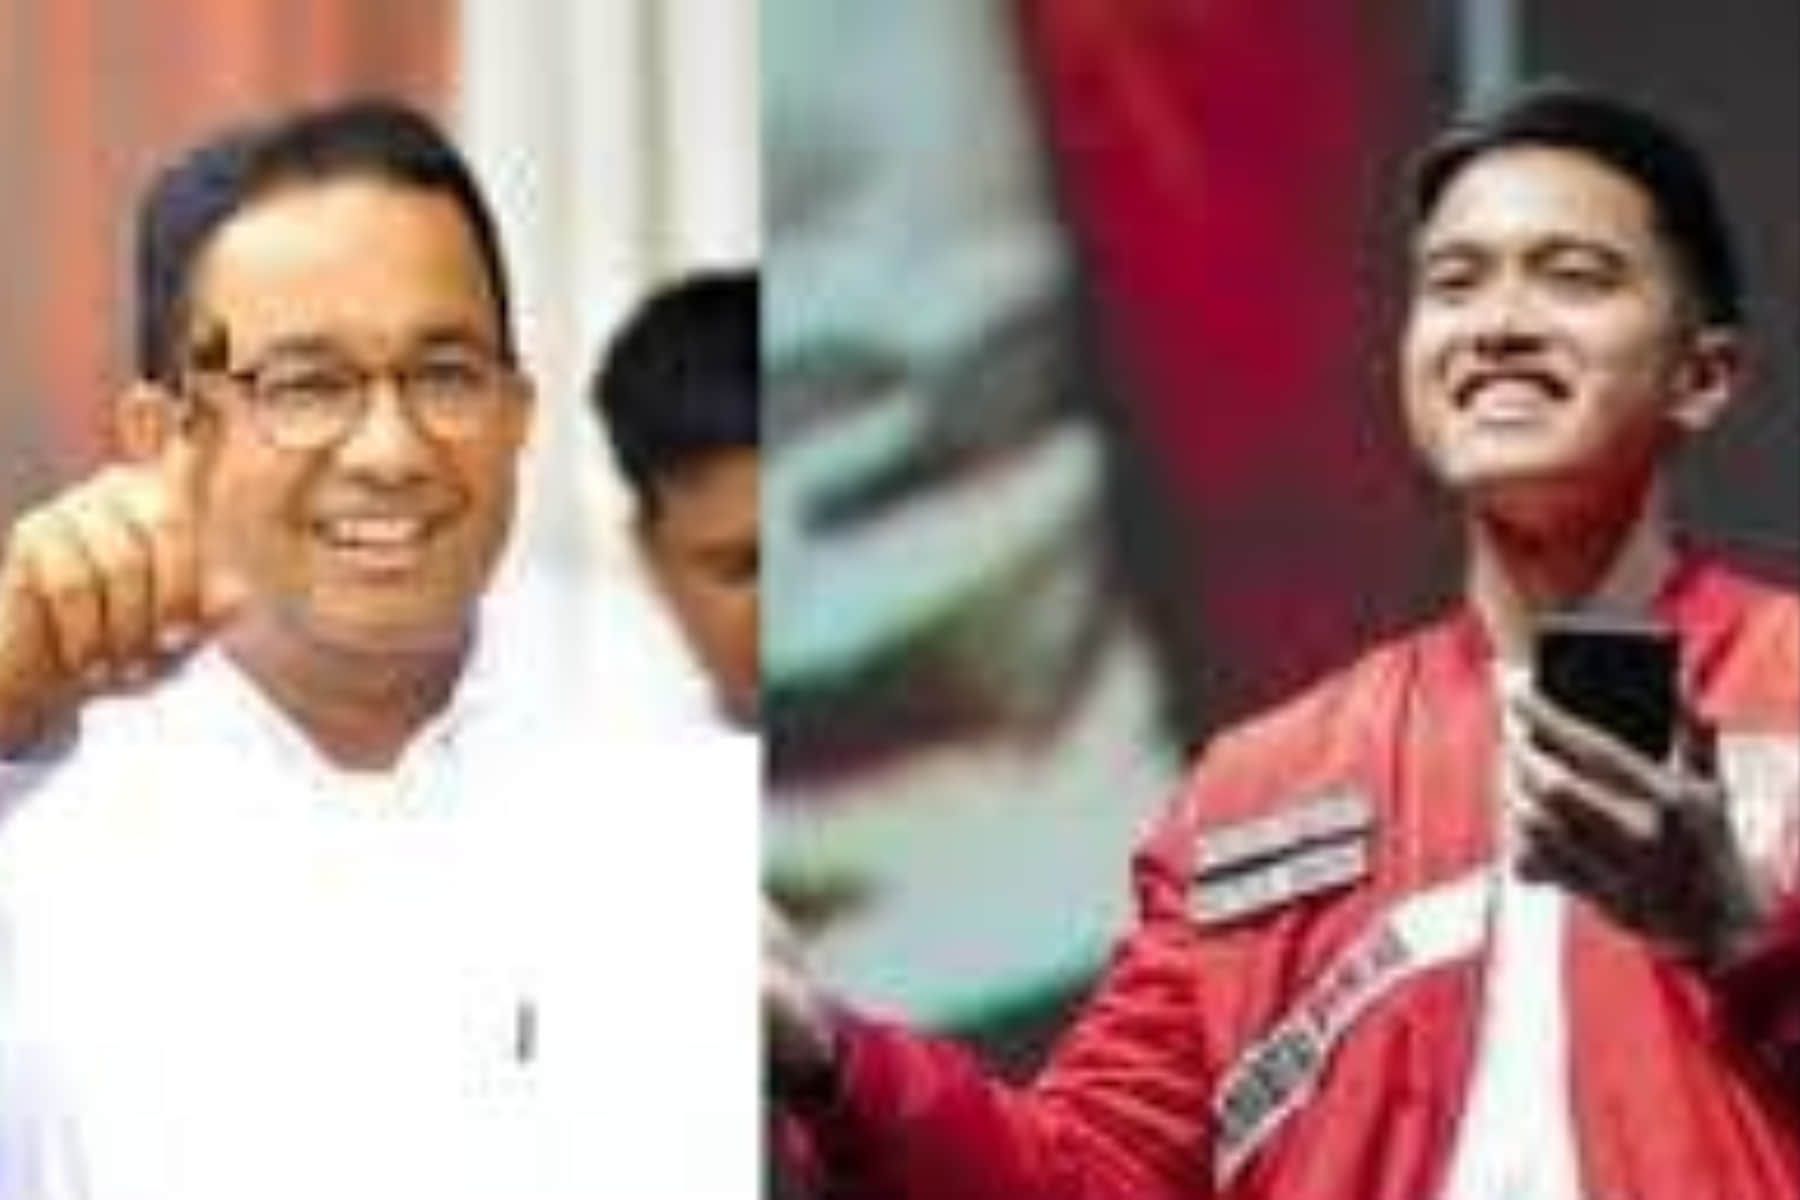 Persaingan koalisi untuk mendampingi Anies Baswedan dalam Pilgub Jakarta 2024 mencuat, dengan Kaesang Pangarep dari PSI dan Ridwan Kamil dari KIM menjadi sorotan.